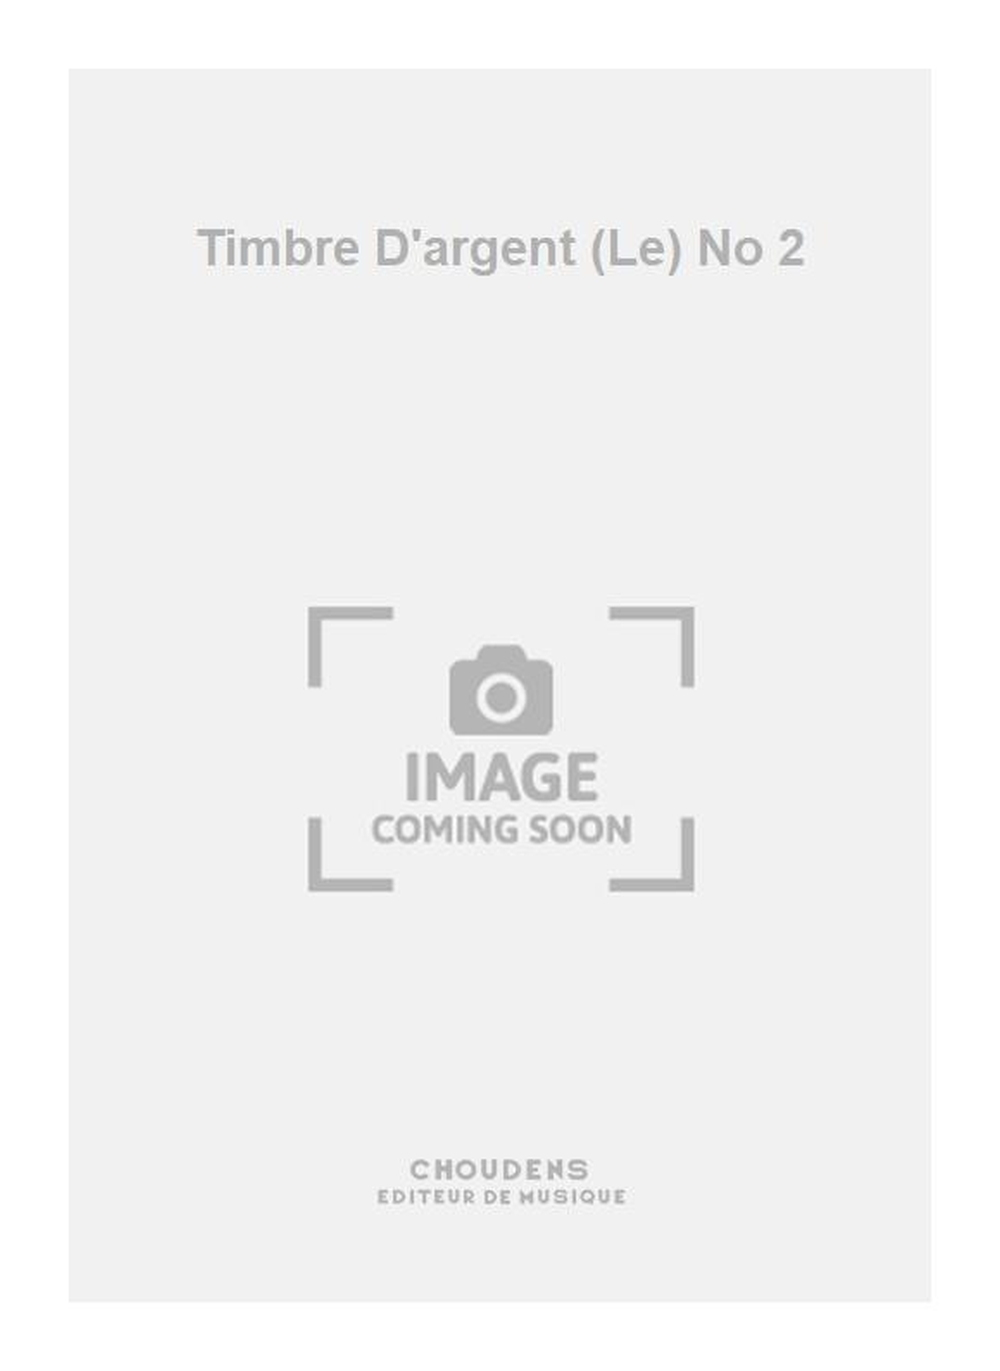 Camille Saint-Saëns: Timbre D'argent (Le) No 2